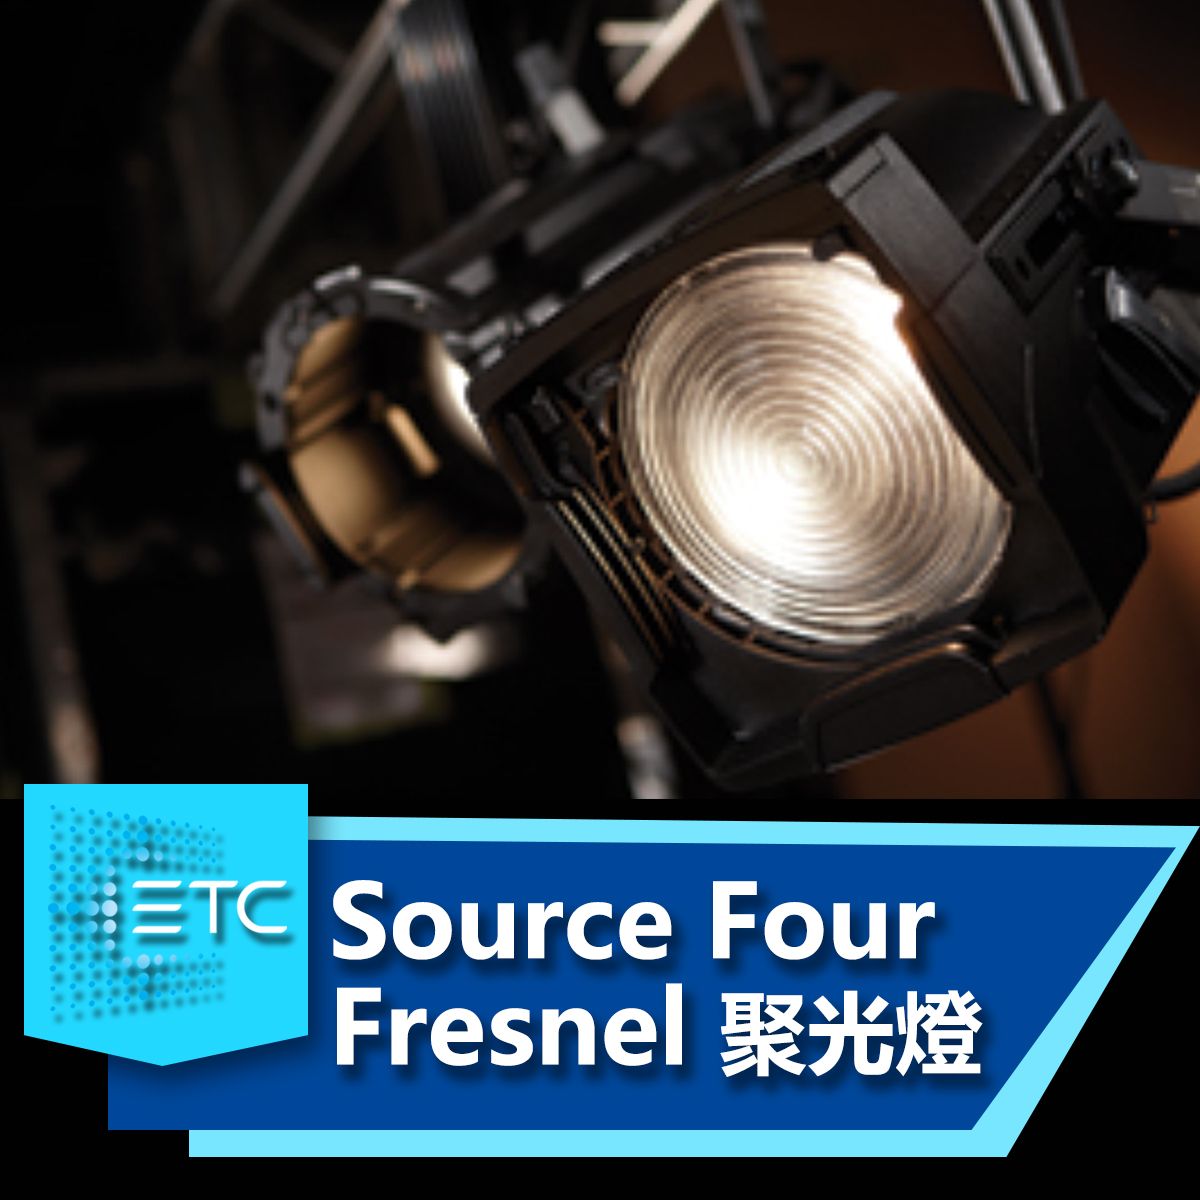 ETC Source Four Fresnel 聚光燈